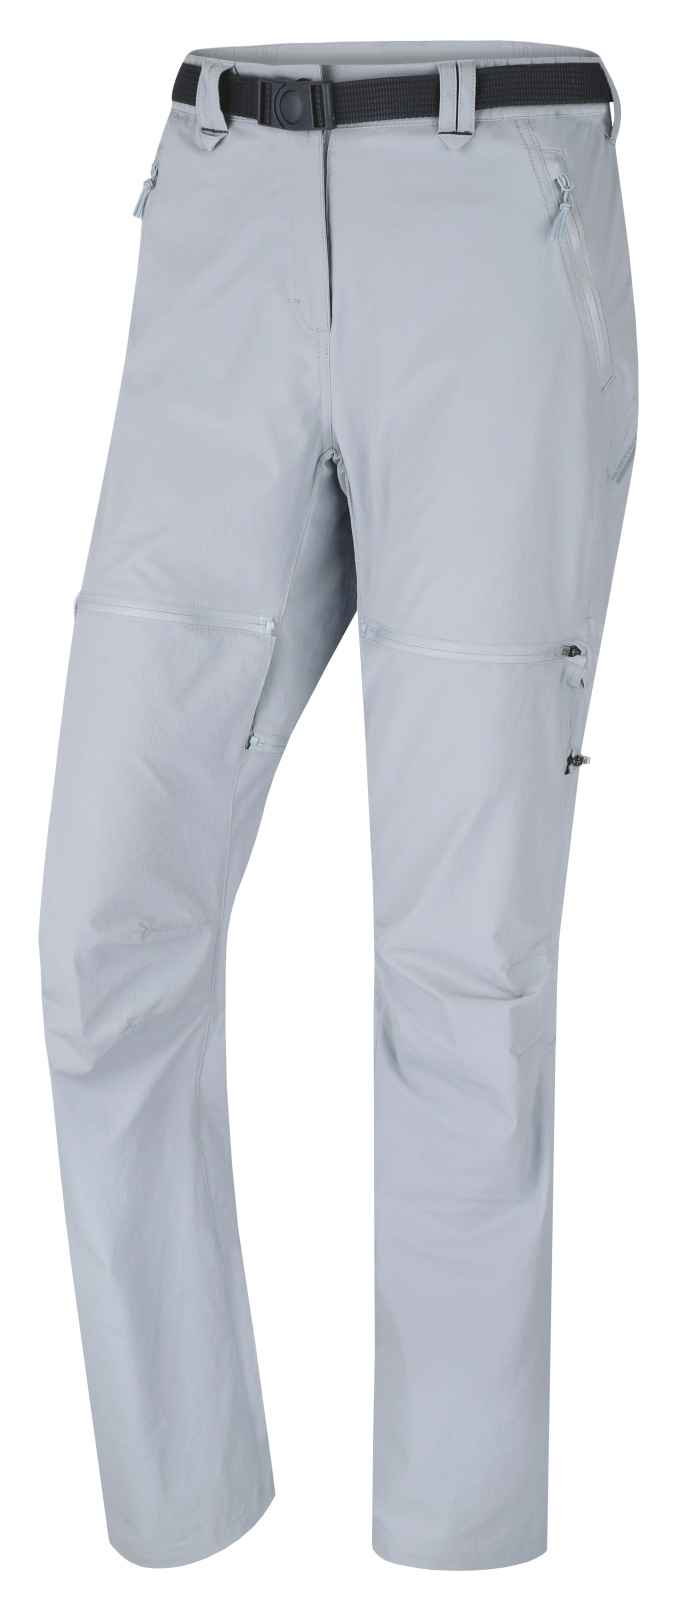 Husky Dámské outdoor kalhoty Pilon L light grey Velikost: XS dámské kalhoty